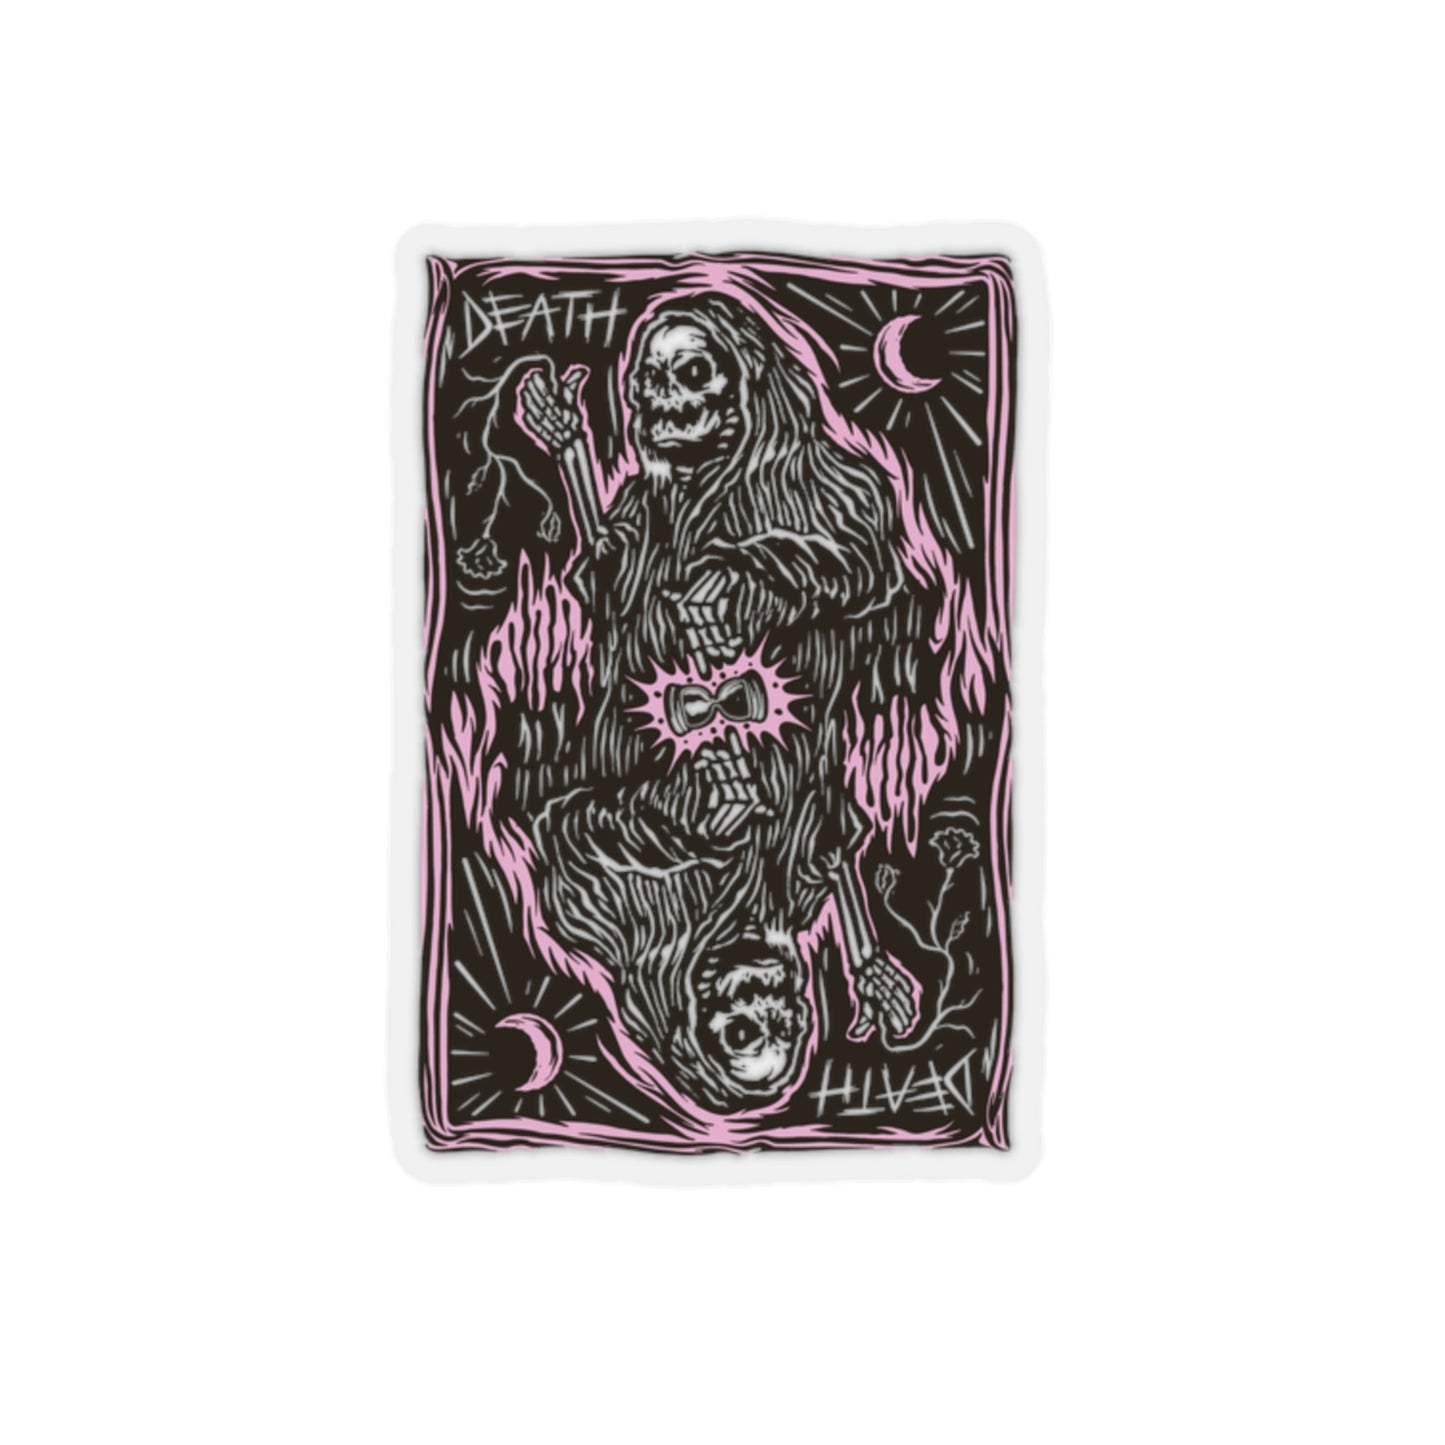 Goth Aesthetic Grim Reaper Card Sticker